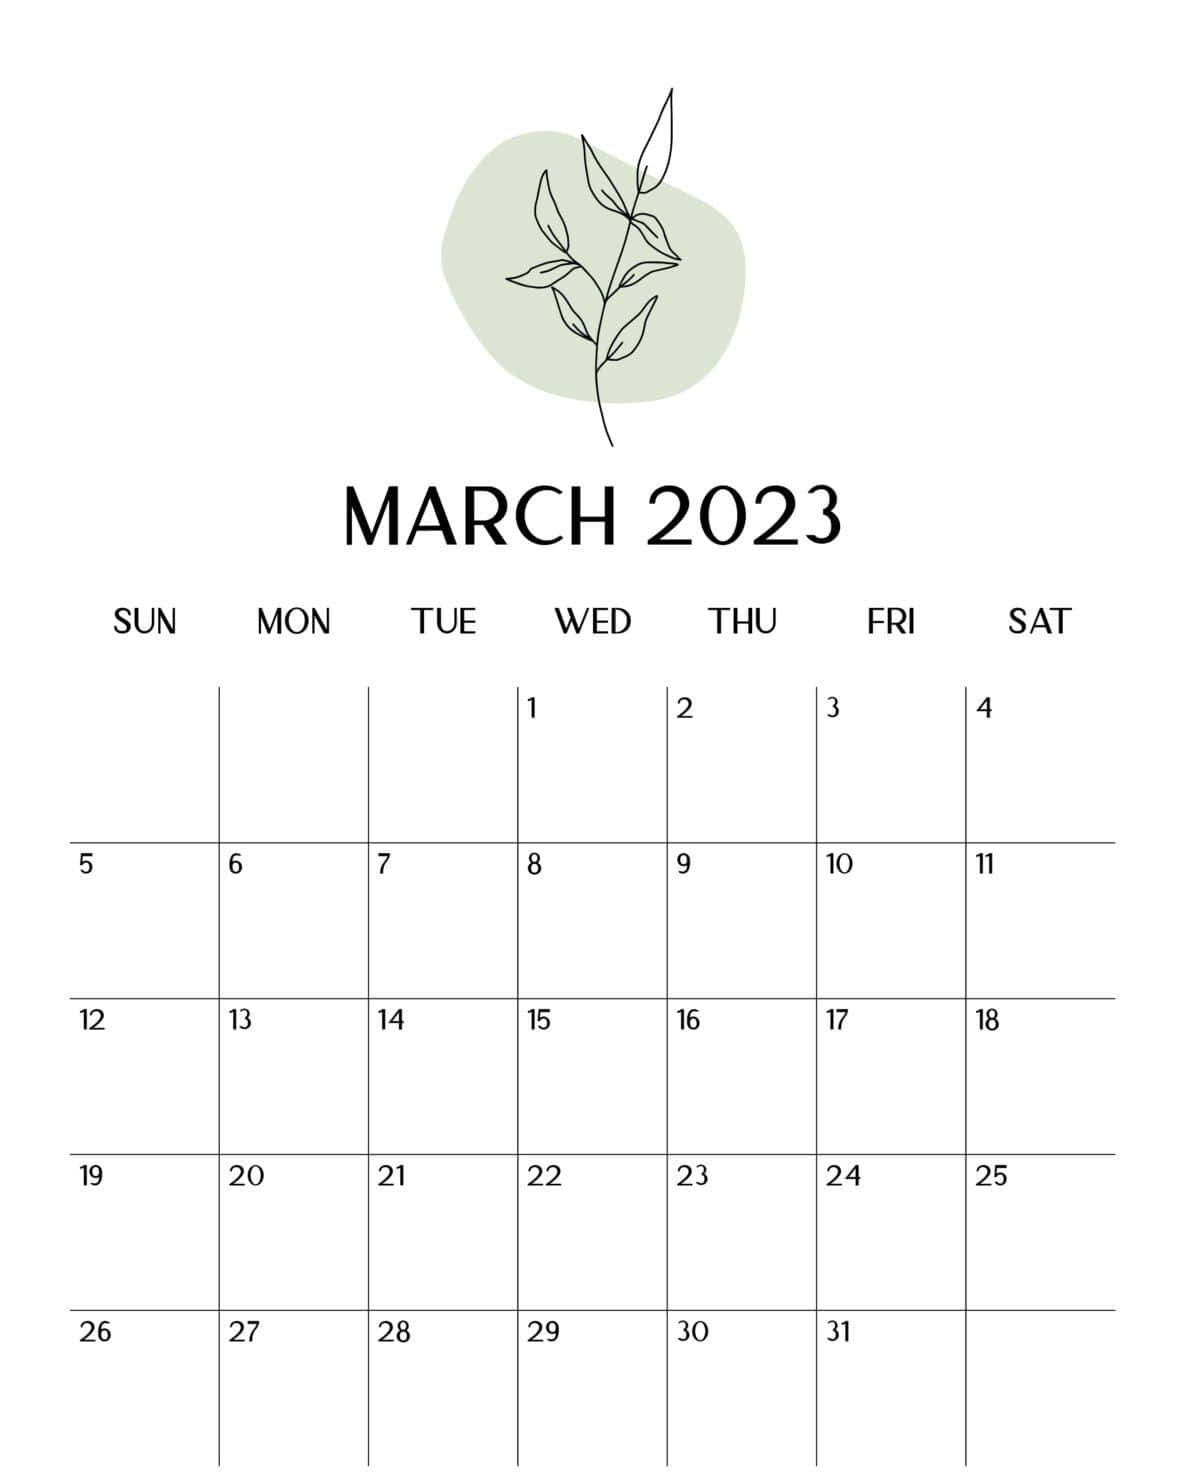 Feiernsie Den Beginn Eines Neuen Monats: März